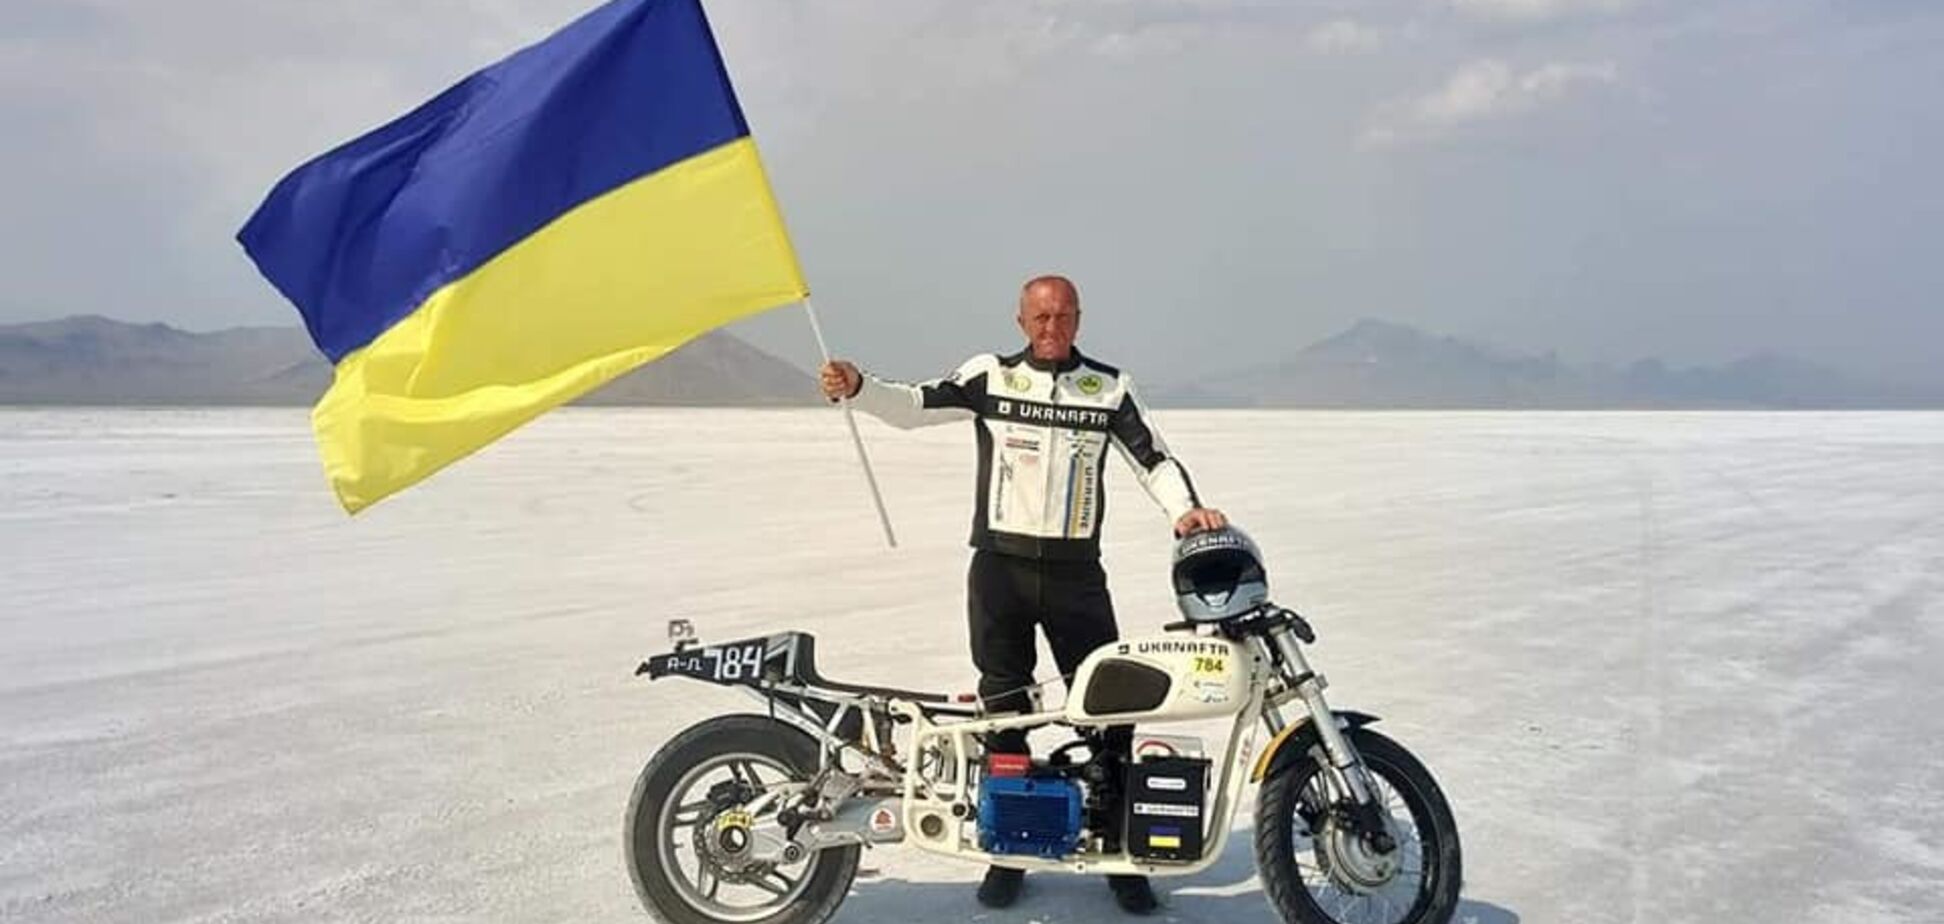 Украинец на мотоцикле 'Днепр' установил невероятный мировой рекорд 